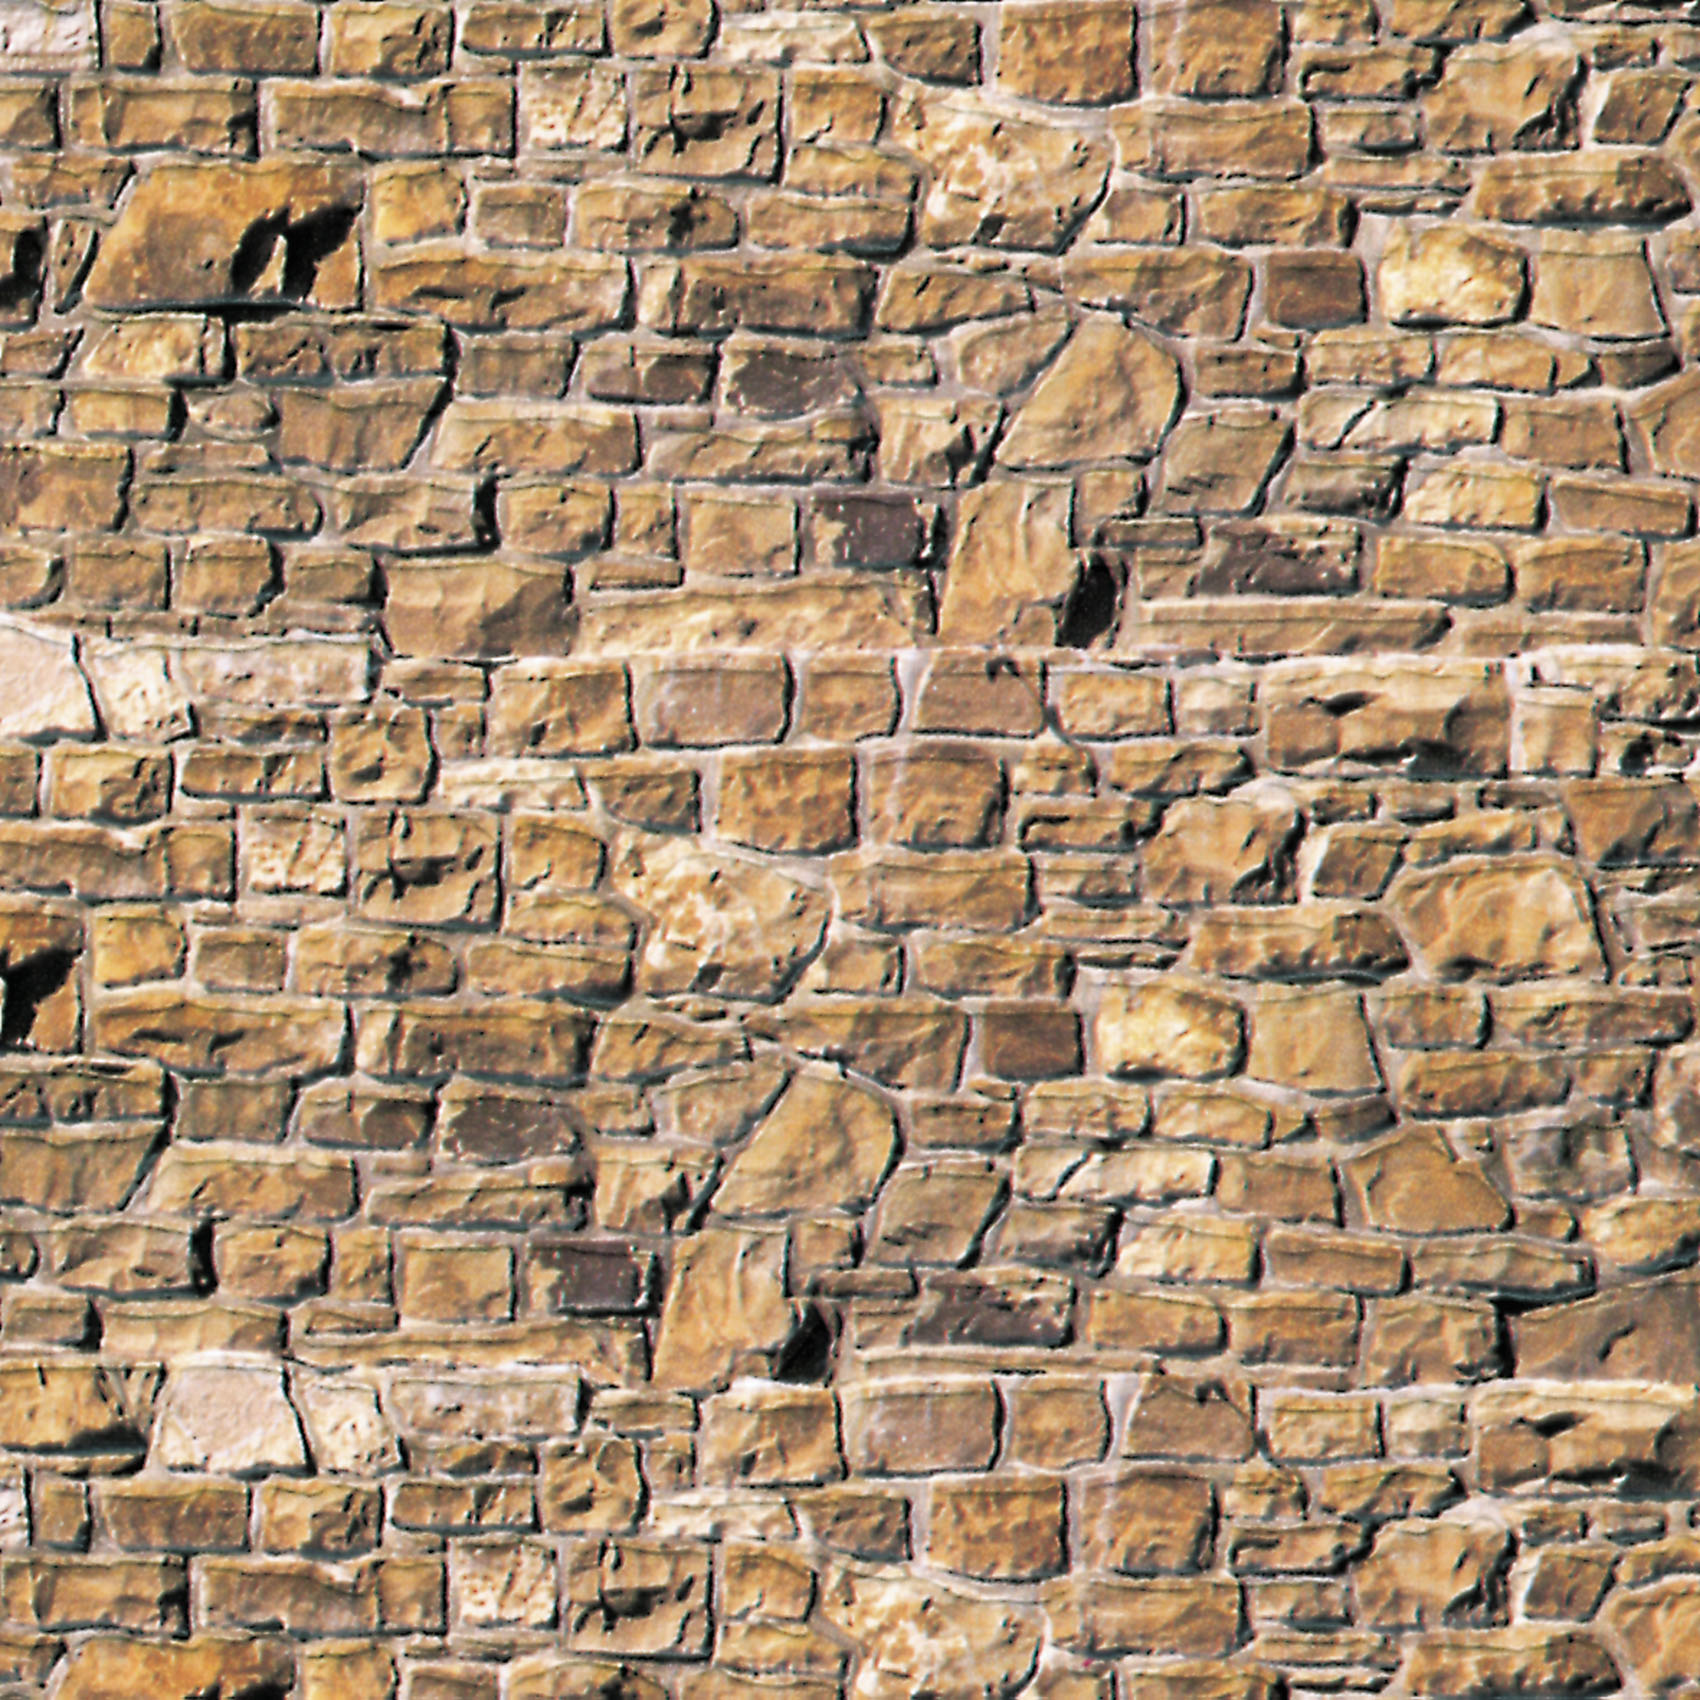 Vollmer 46036 H0 Mauerplatte Mauerstein beige-braun aus Karton, 25 x 12,5 cm, 10 Stück 